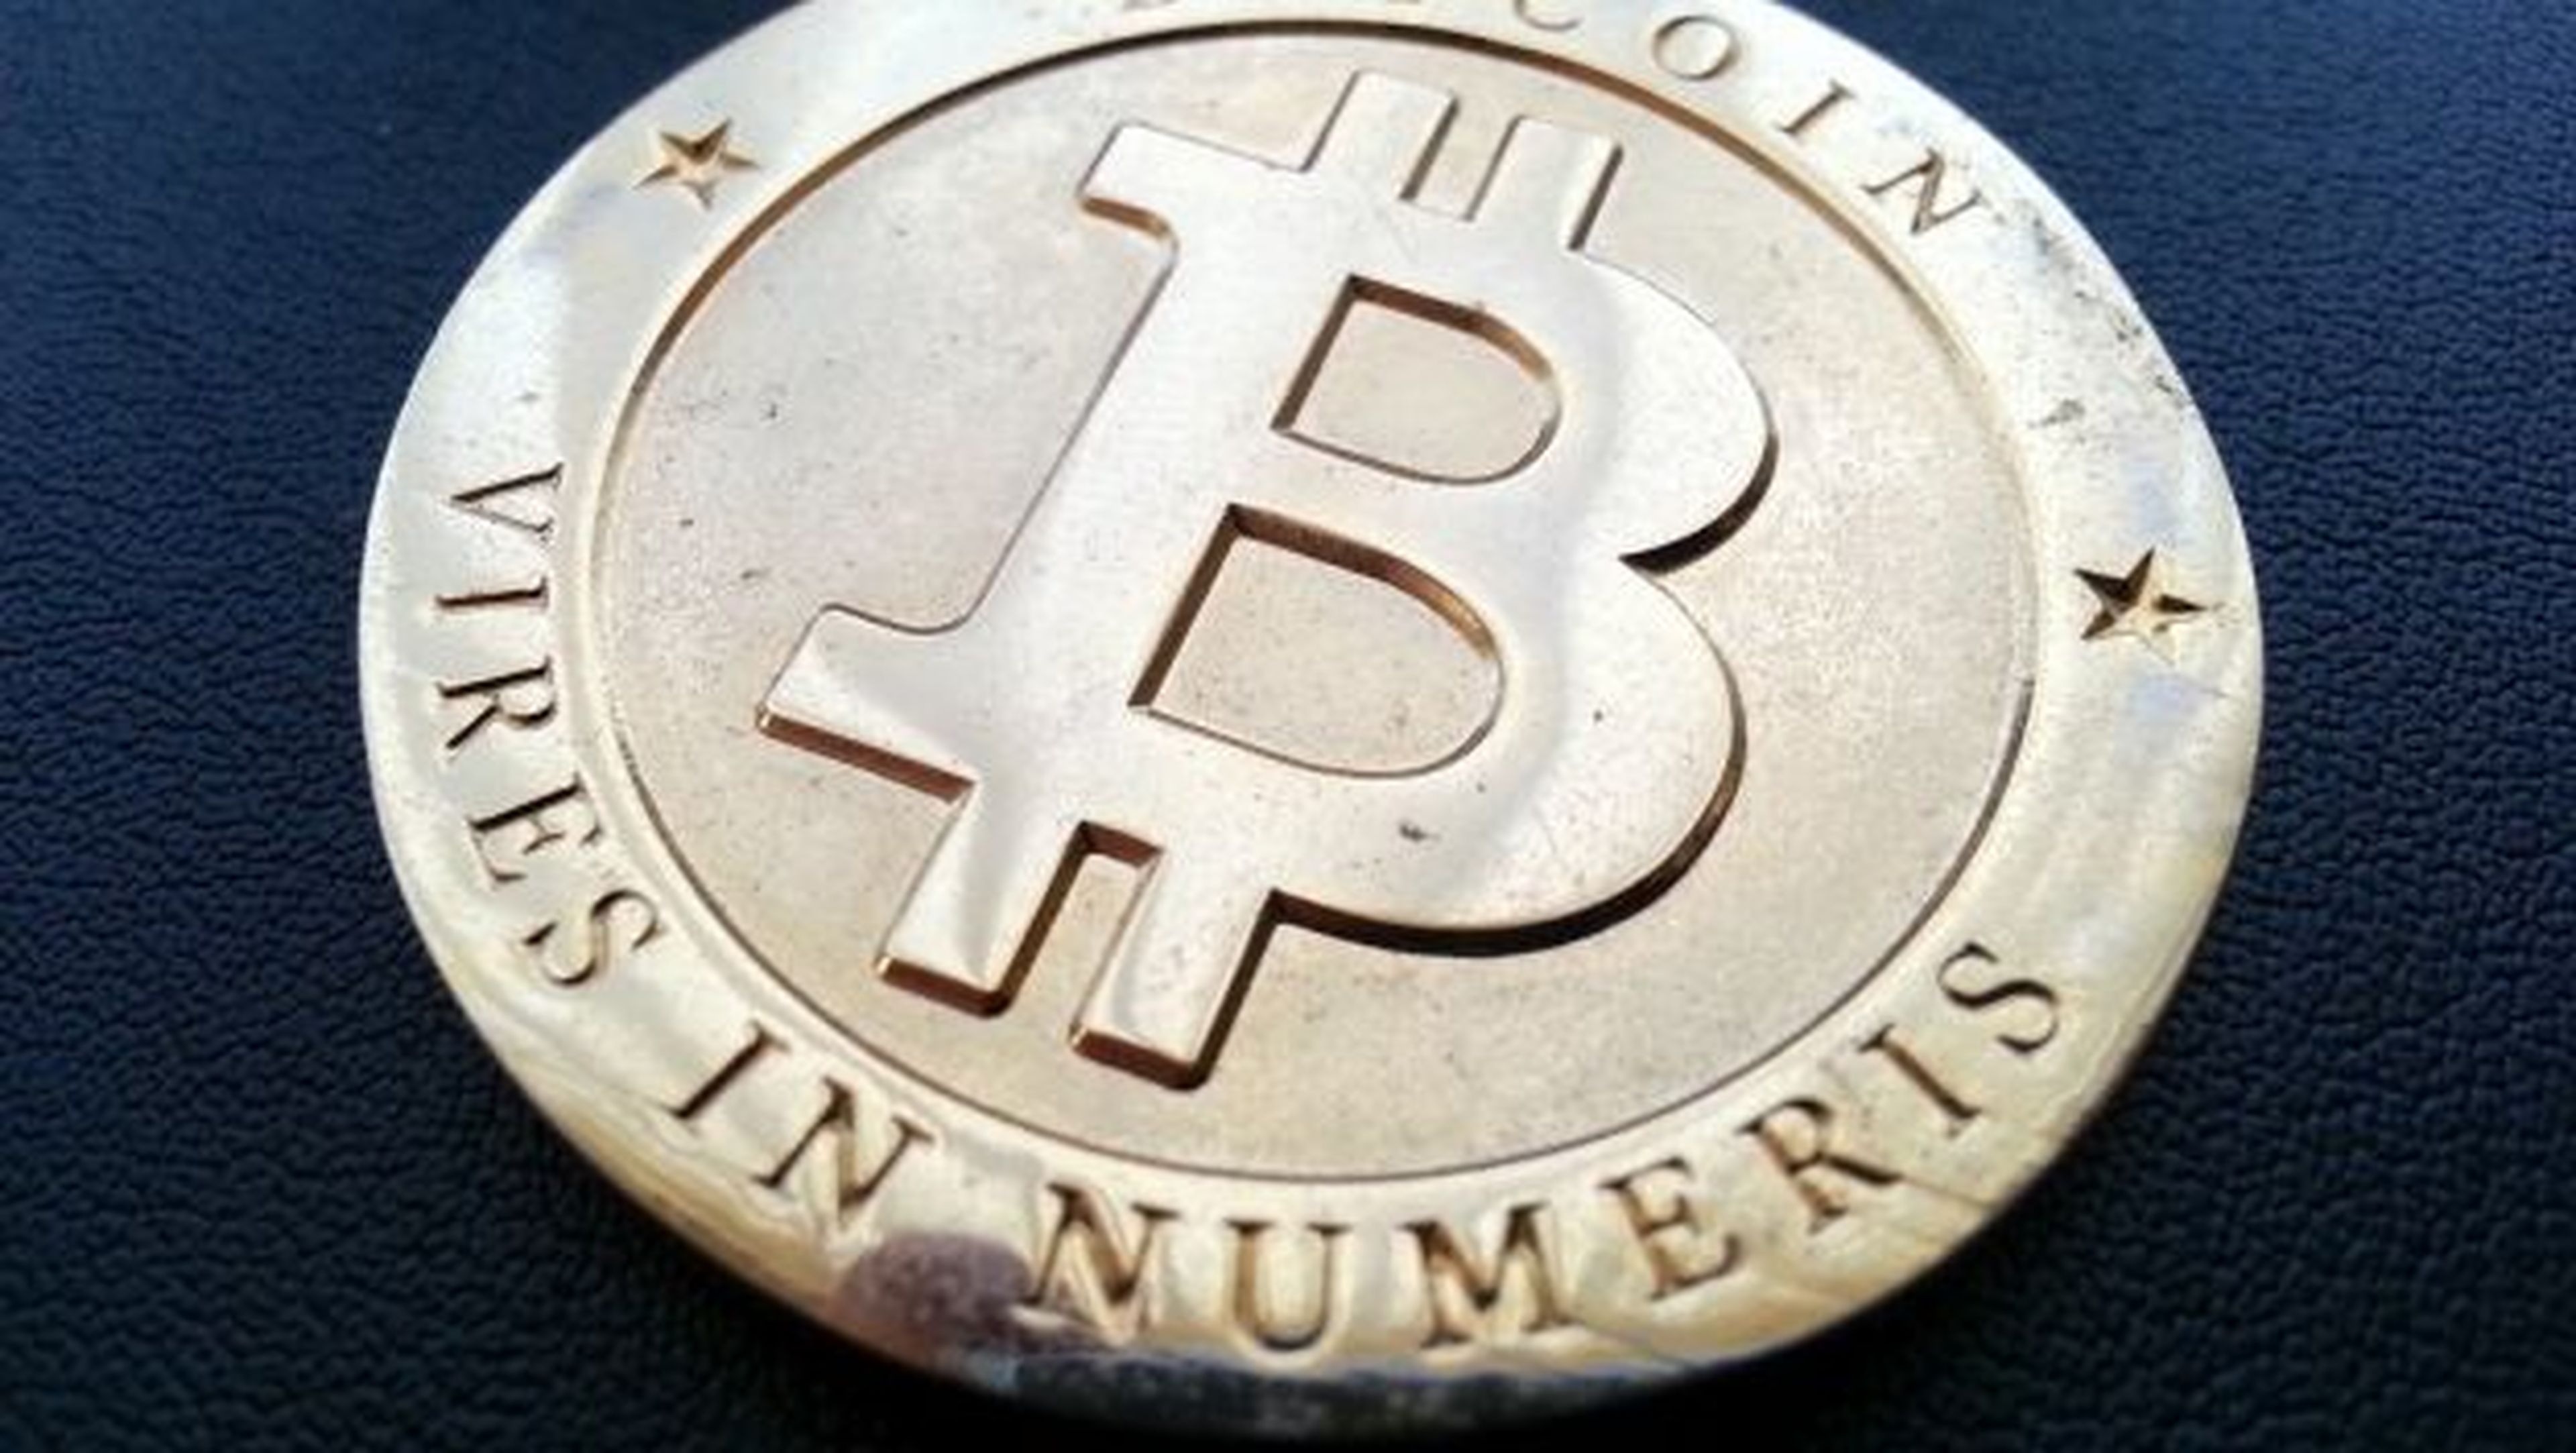 La justicia de Japón desacredita al Bitcoin